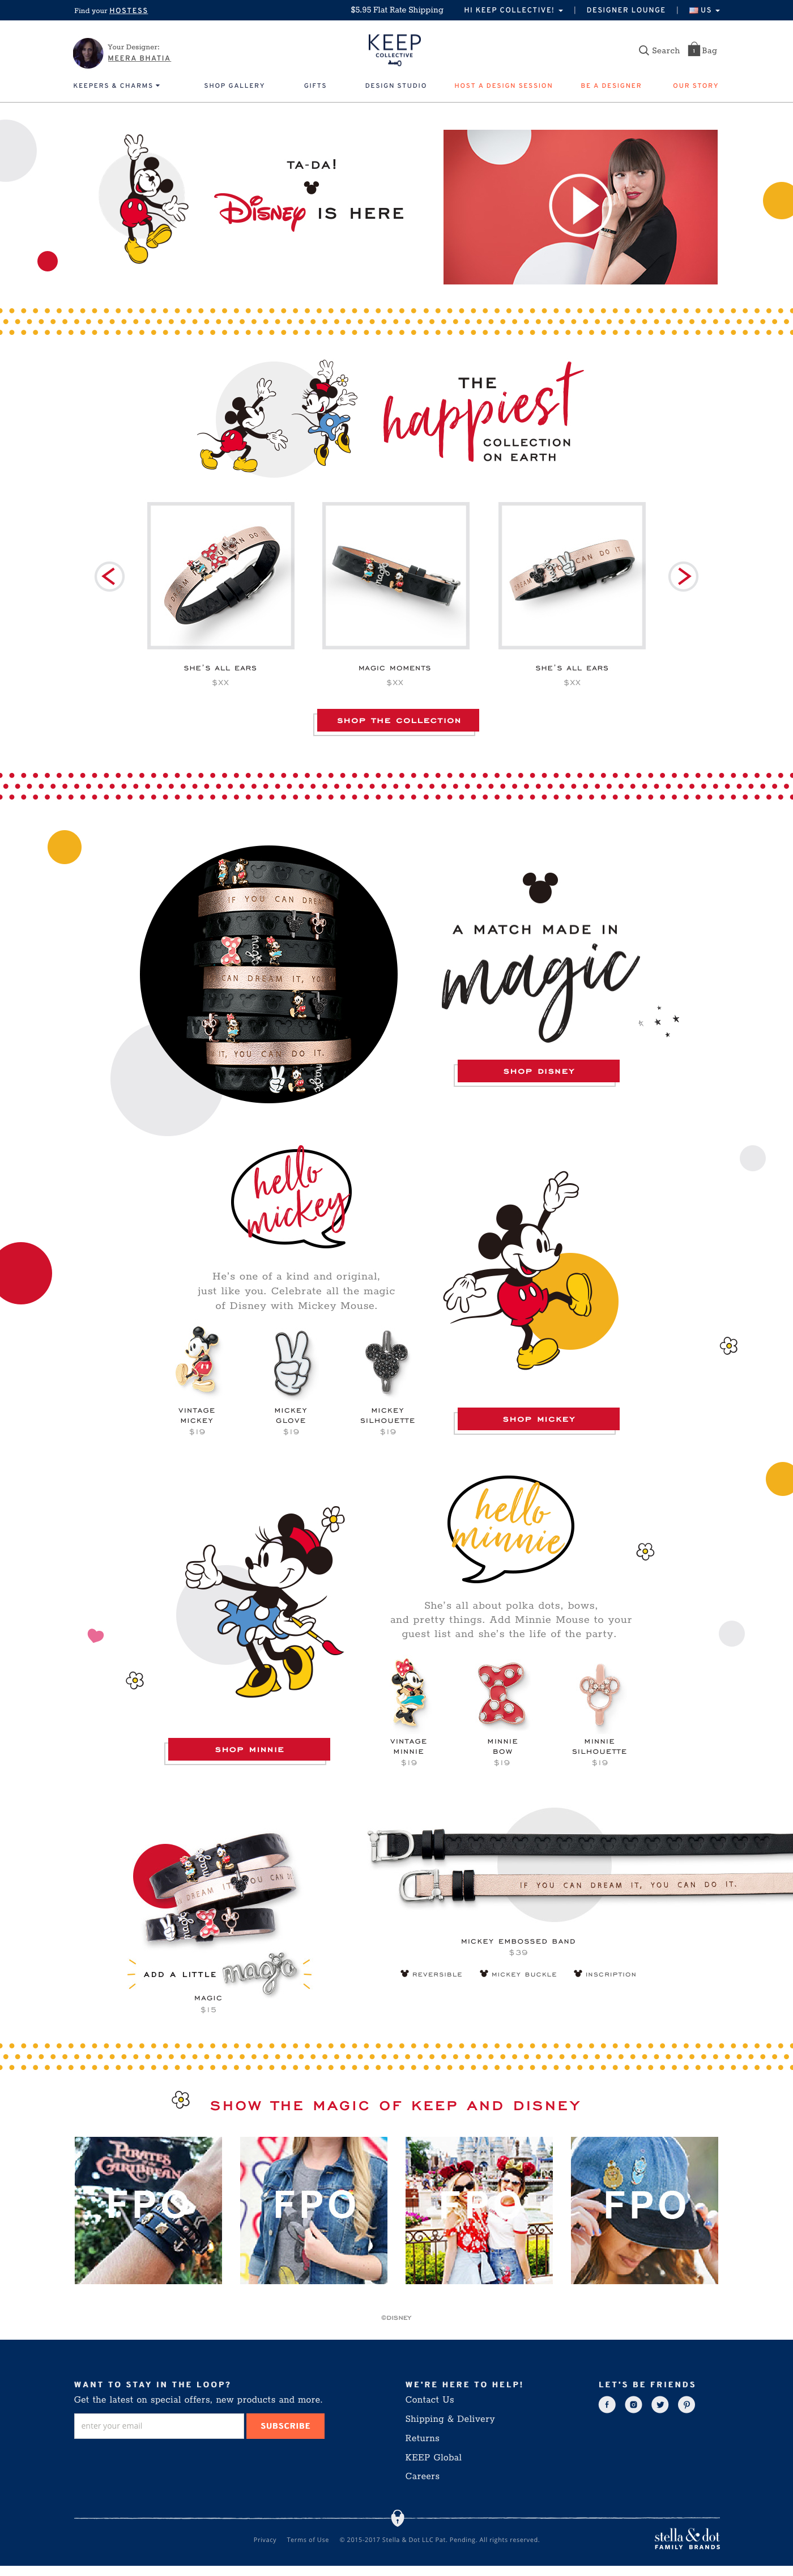 KEEP Disney Landing Page - Desktop.jpg